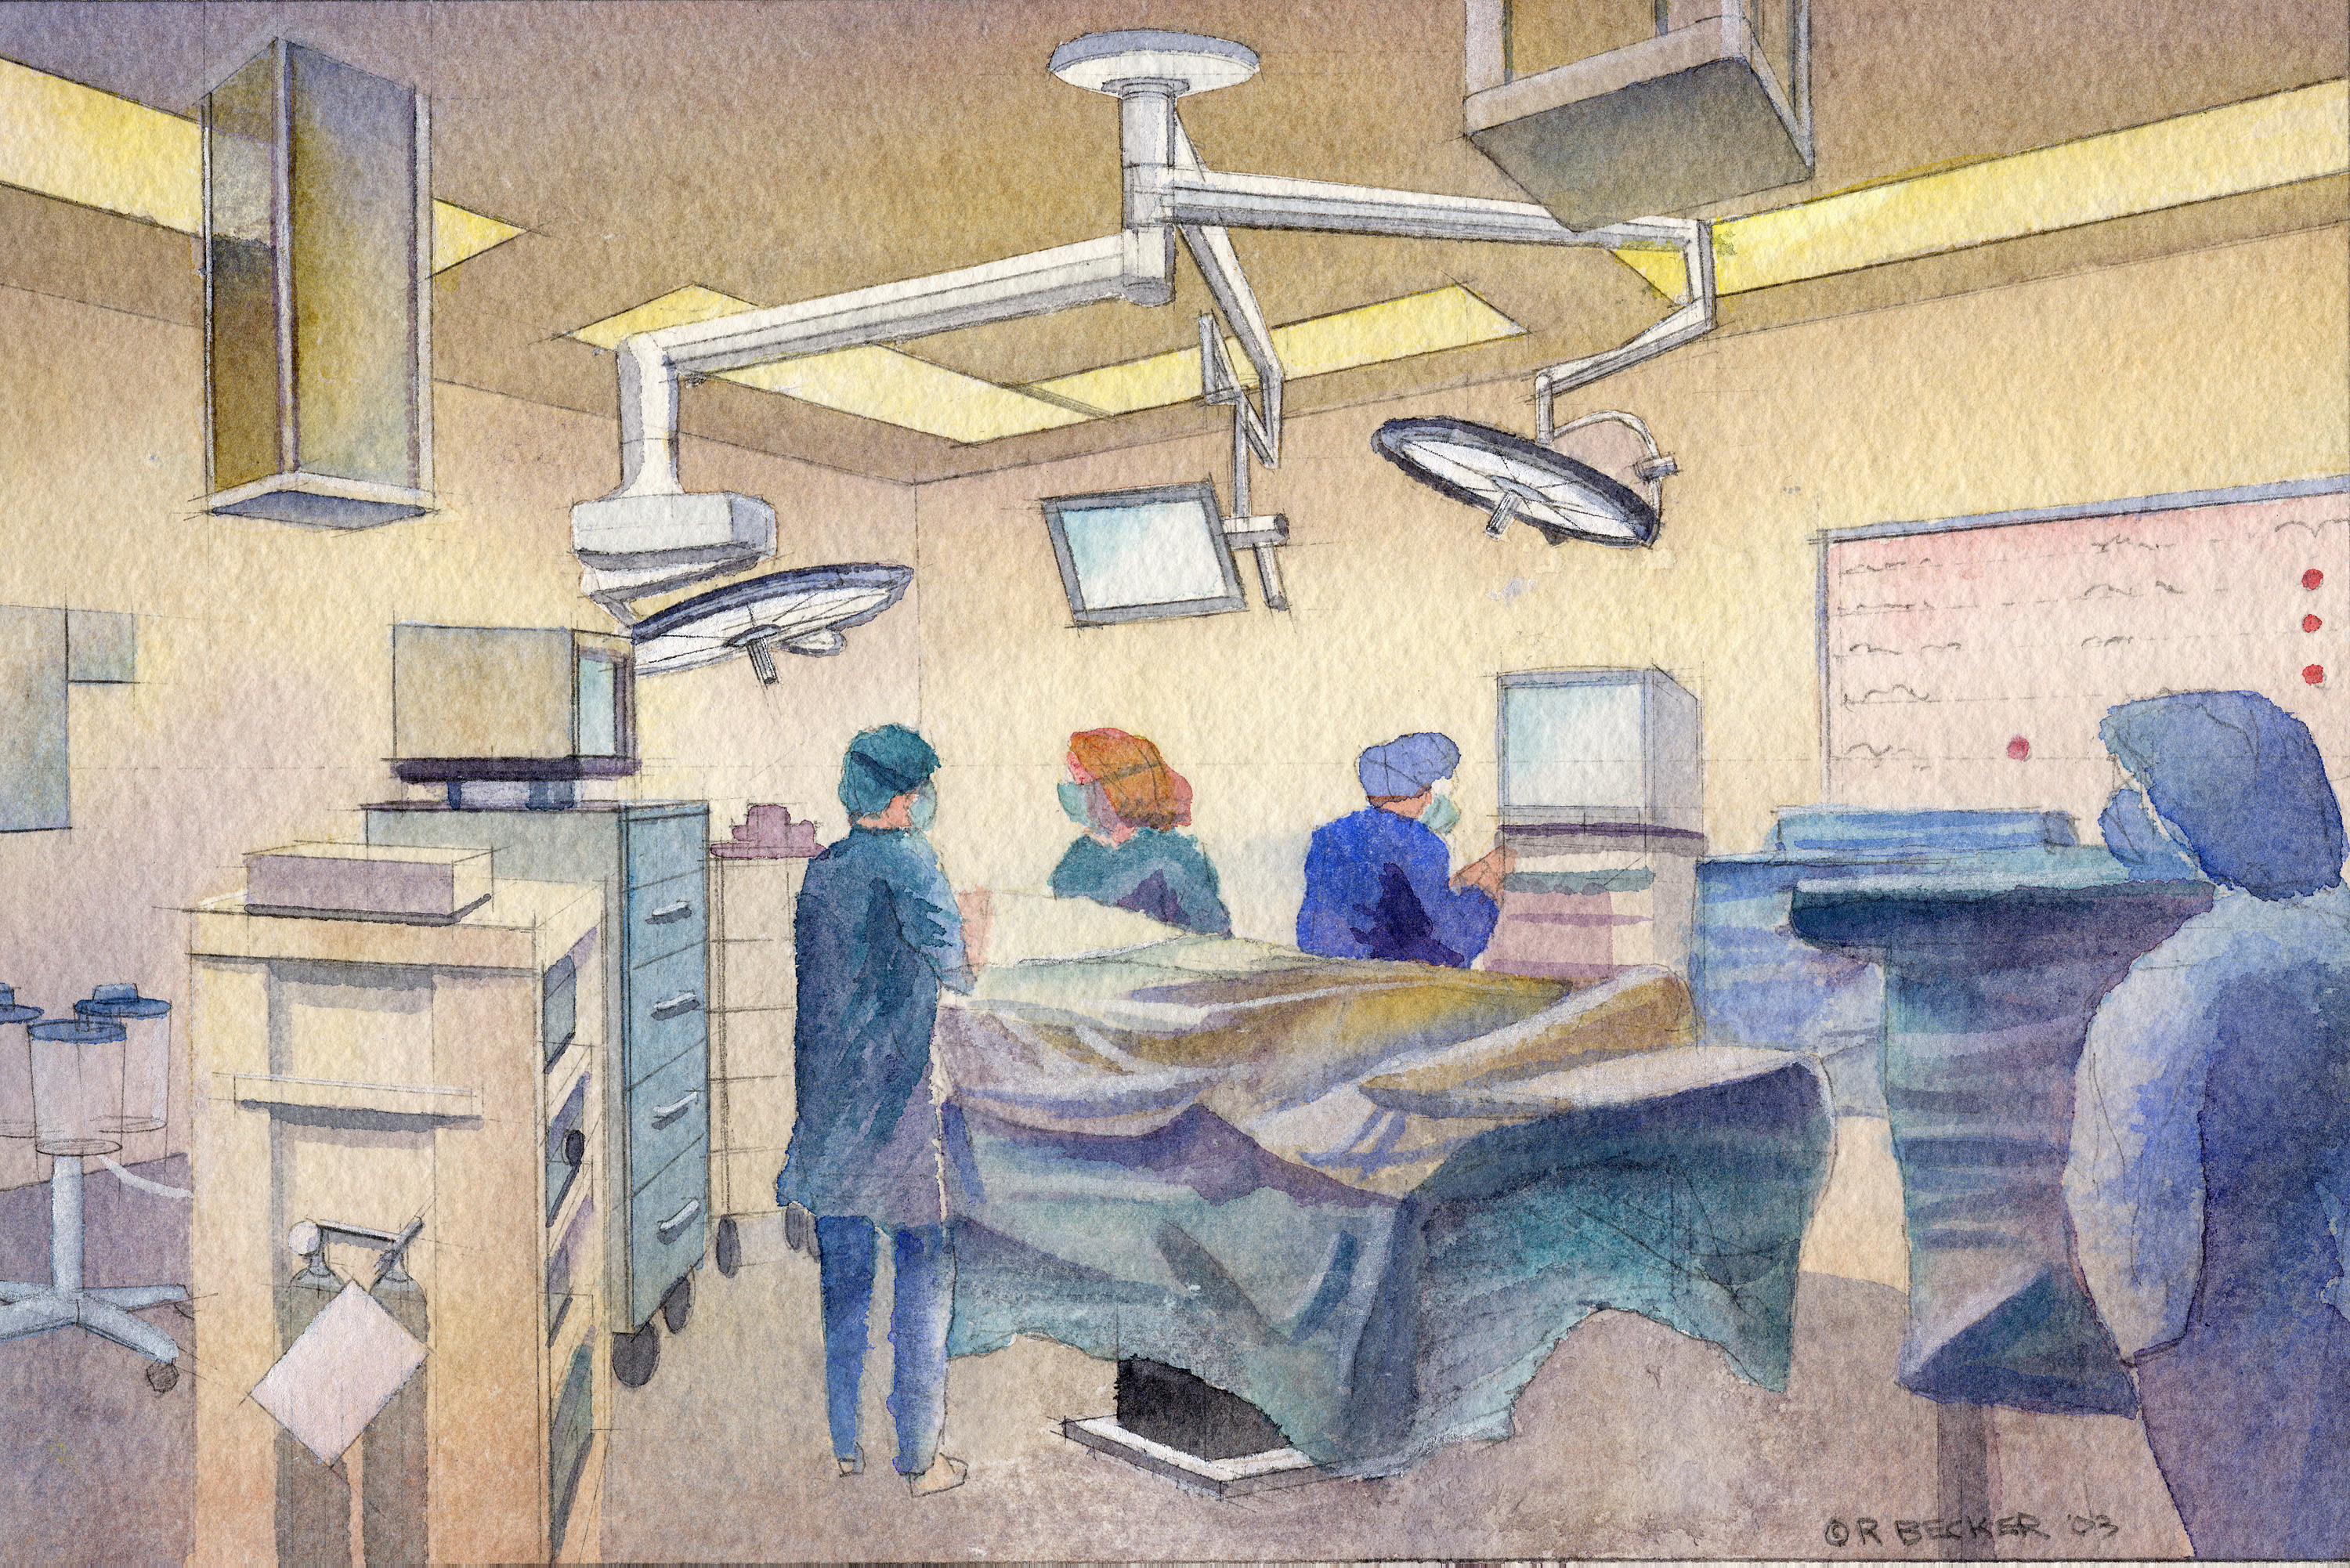 CPMC operating room rendering